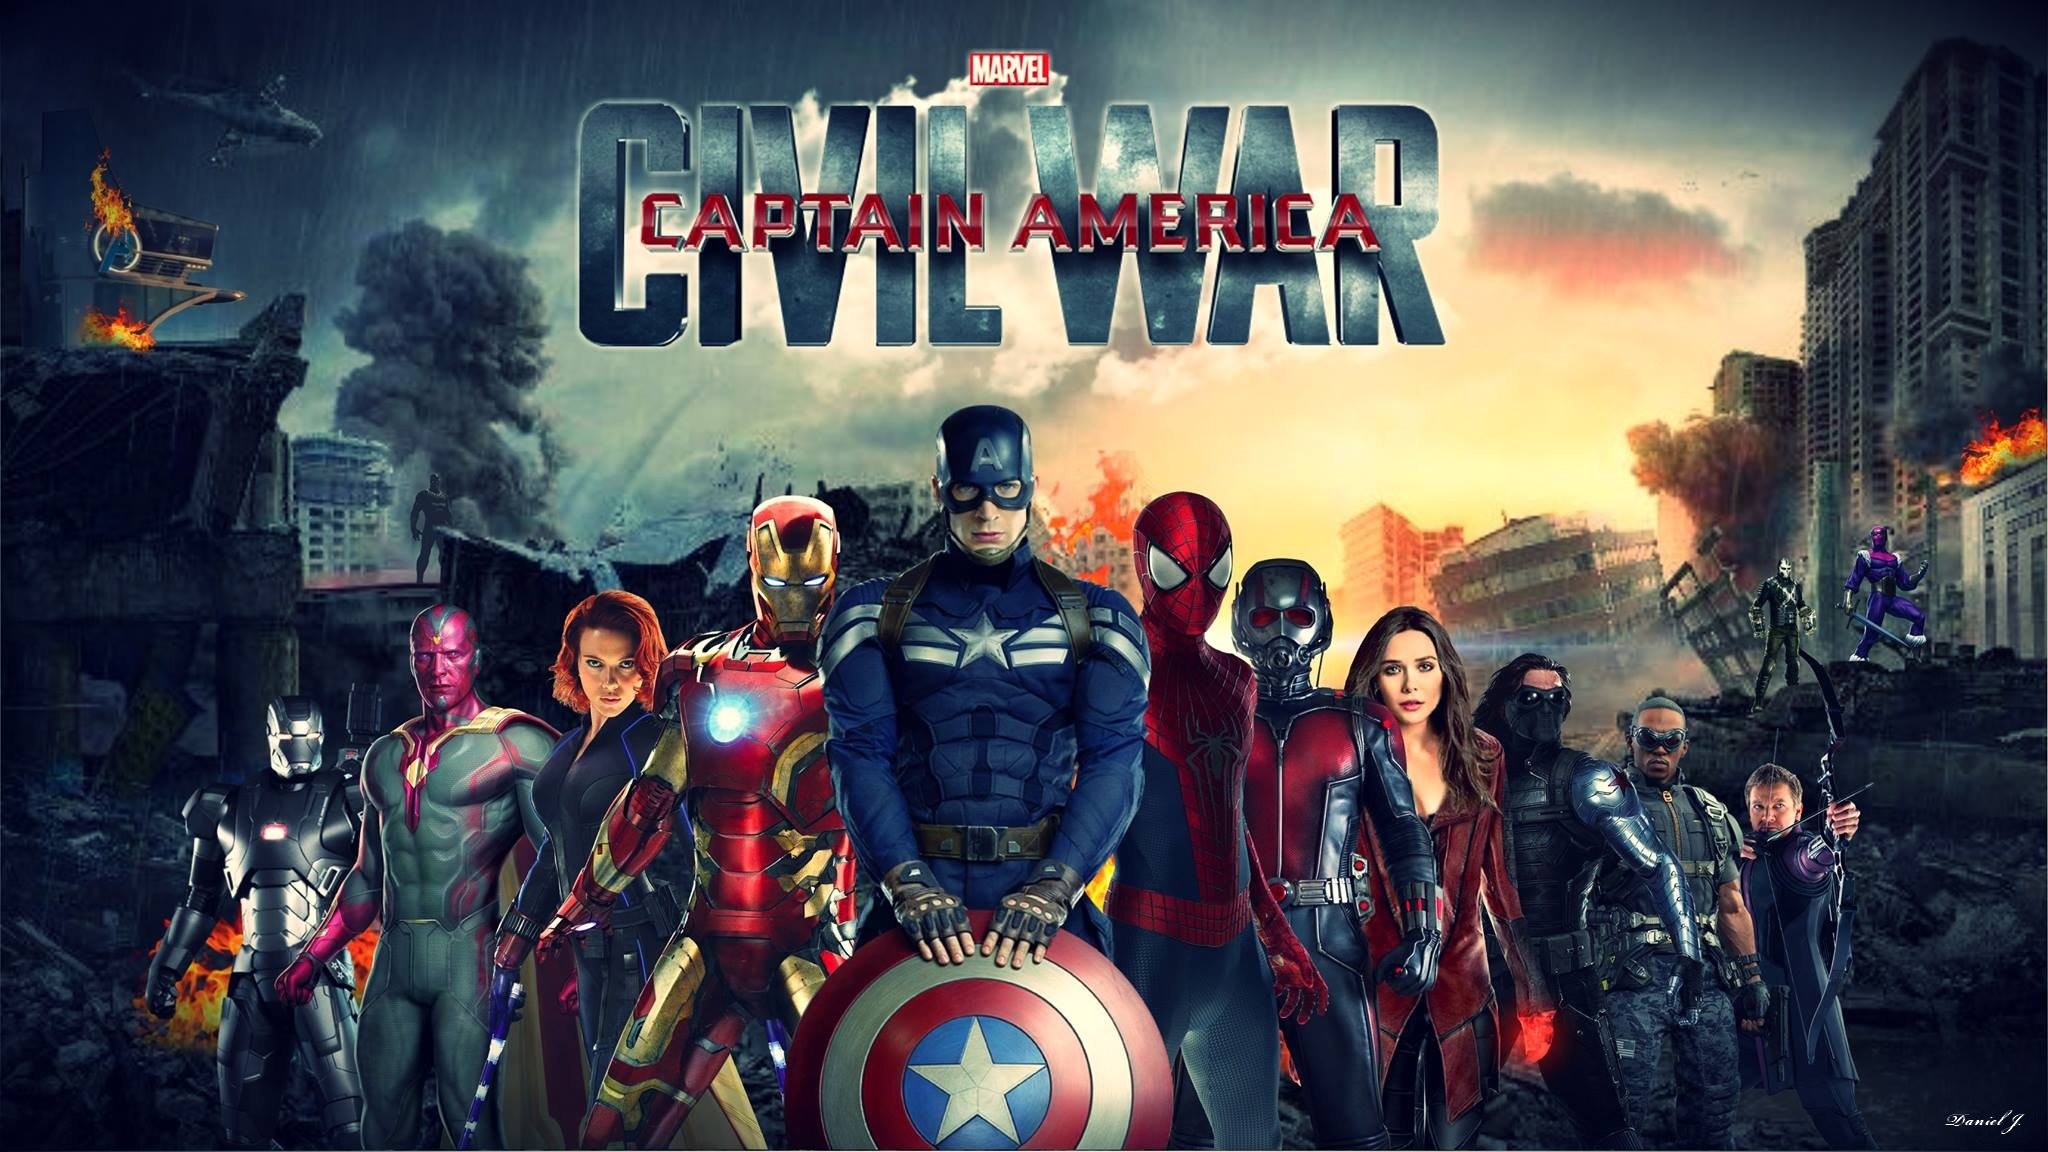 Captain America Civil War Wallpapers HD | HD Wallpapers | Pinterest |  Marvel civil war, Hd wallpaper and Wallpaper